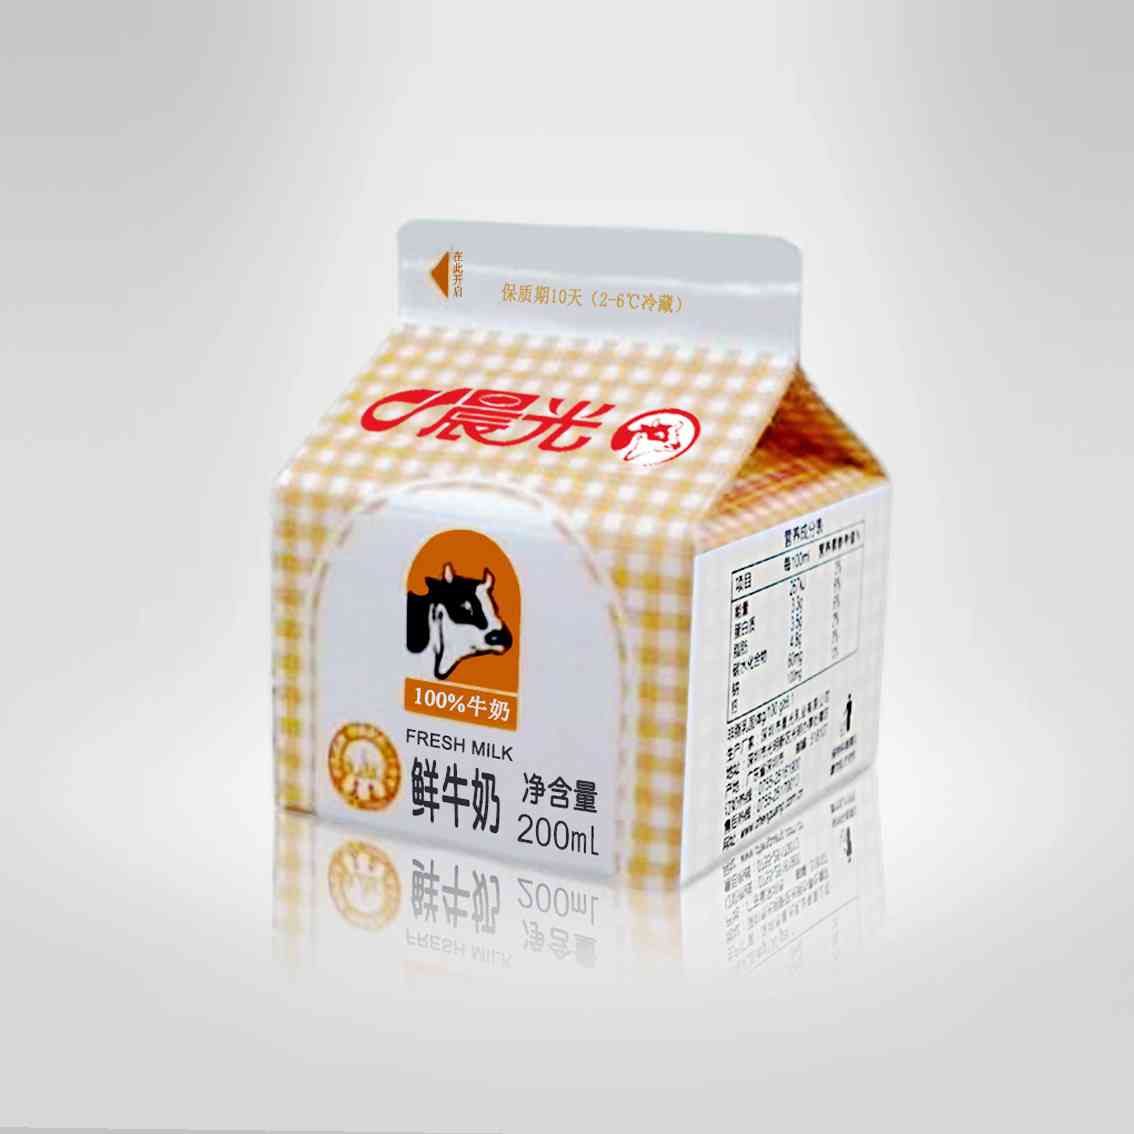 深圳西丽晨光牛奶批发商|深圳蛇口牛奶批发商